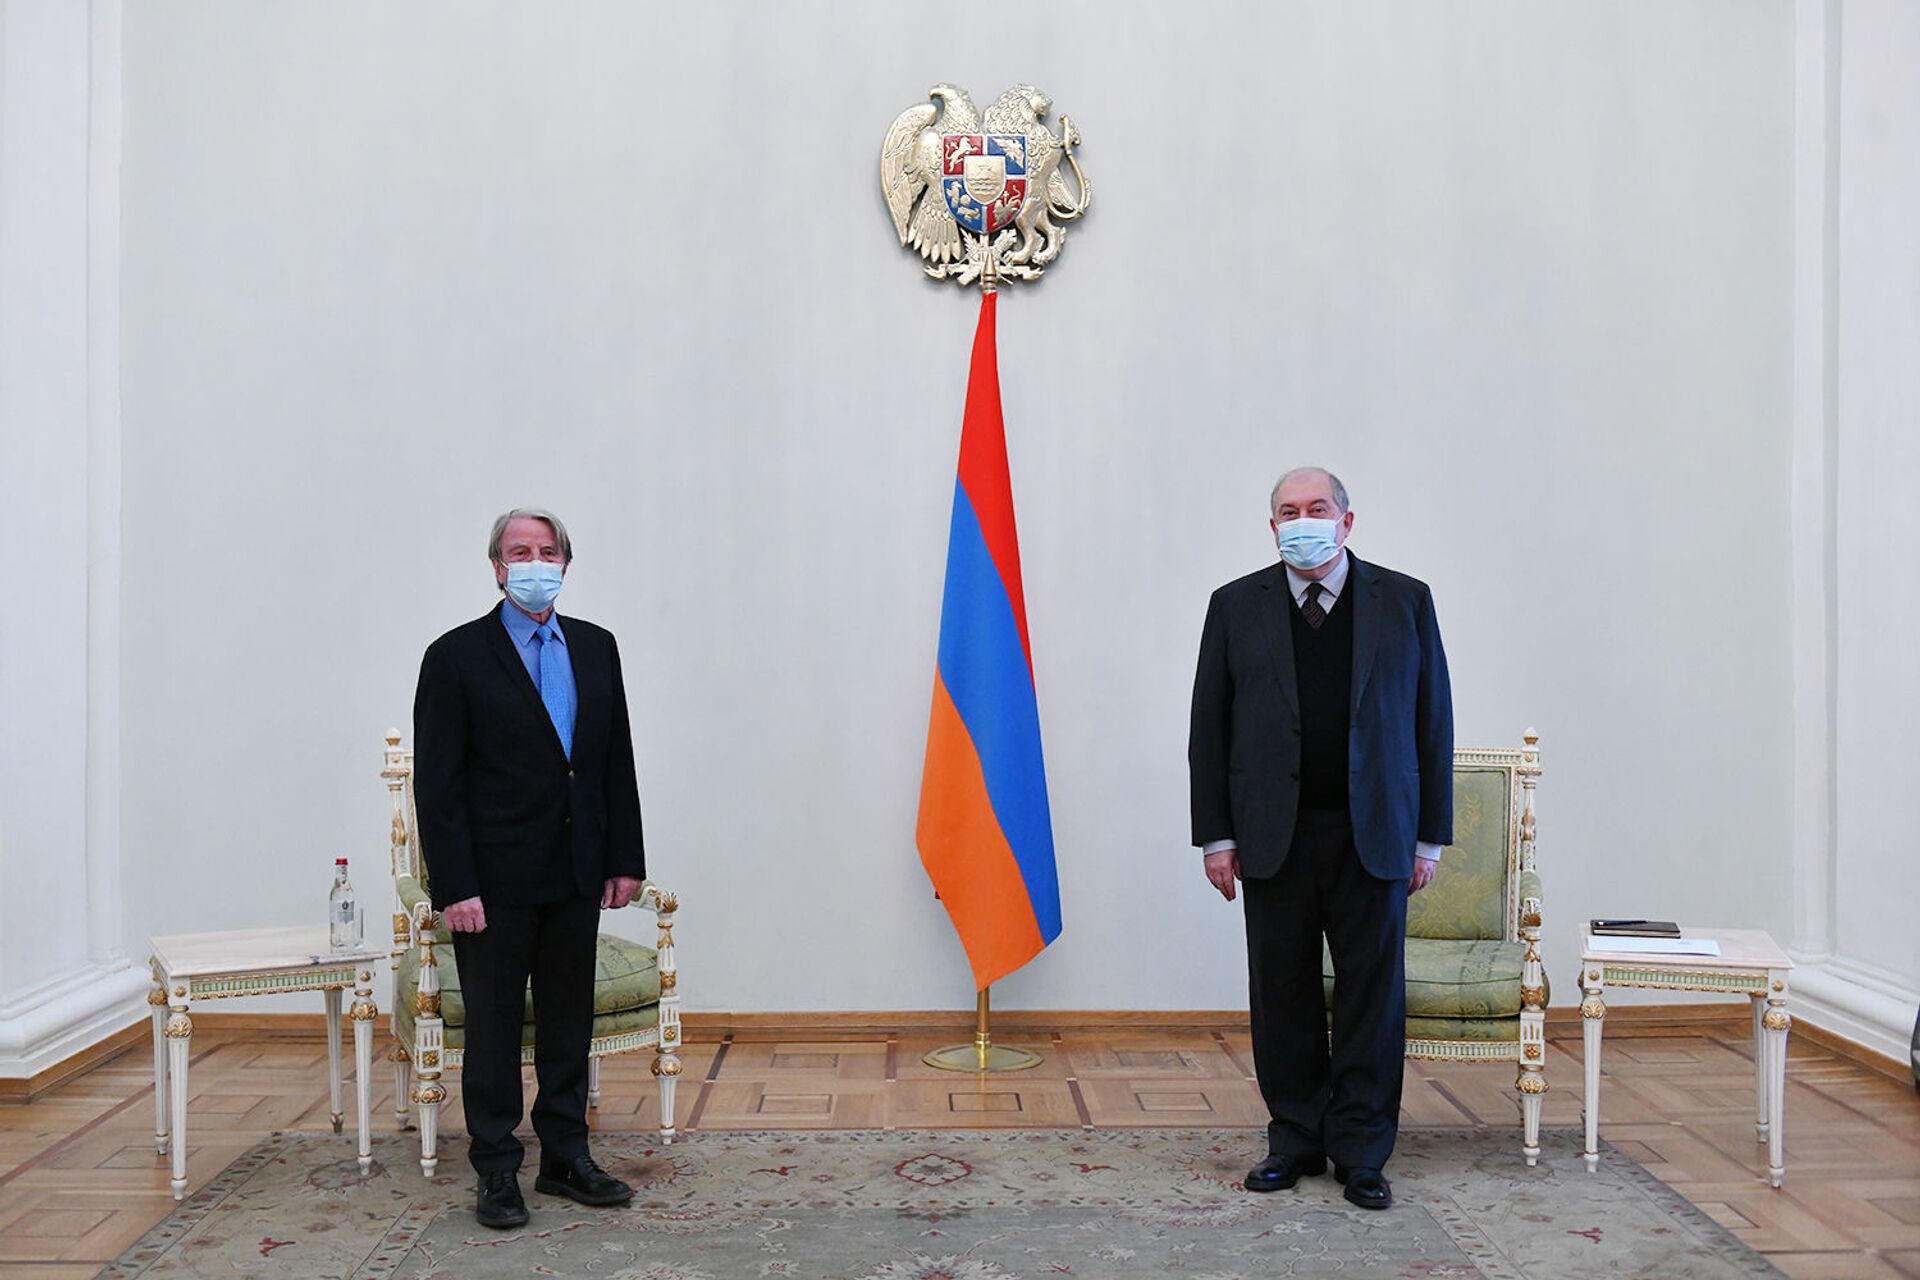 Друг познается в беде - Саркисян и Кушнер встретились в Ереване  - Sputnik Армения, 1920, 26.02.2021